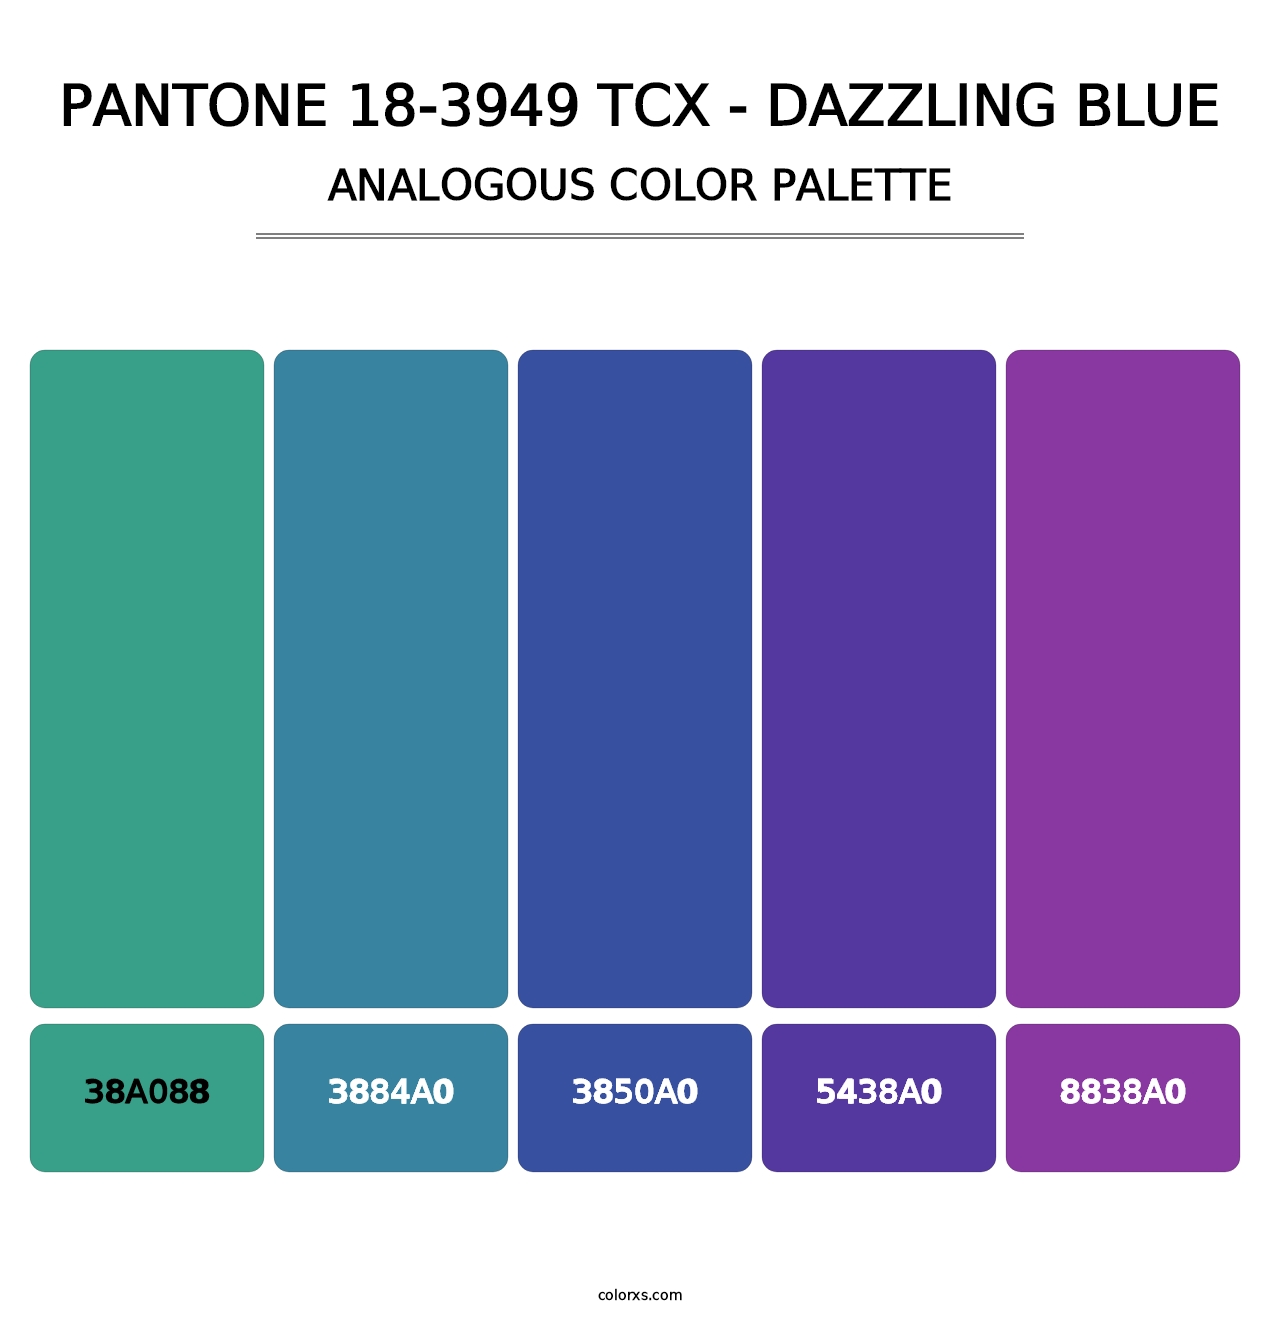 PANTONE 18-3949 TCX - Dazzling Blue - Analogous Color Palette